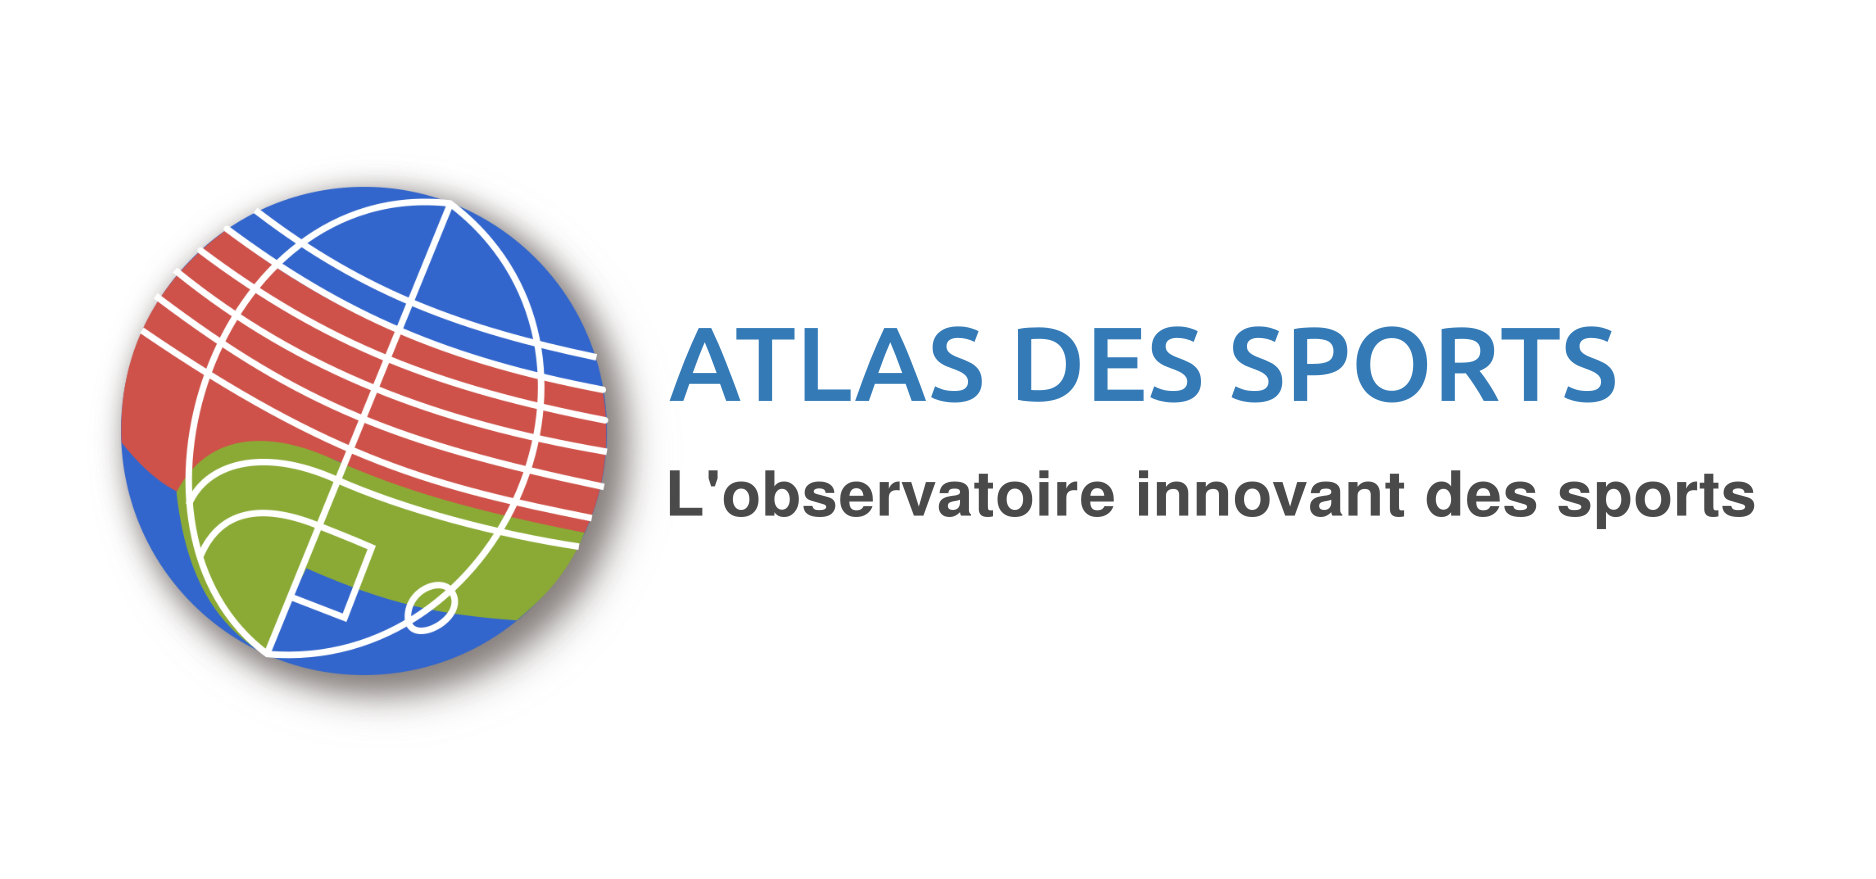 Atlas des sports